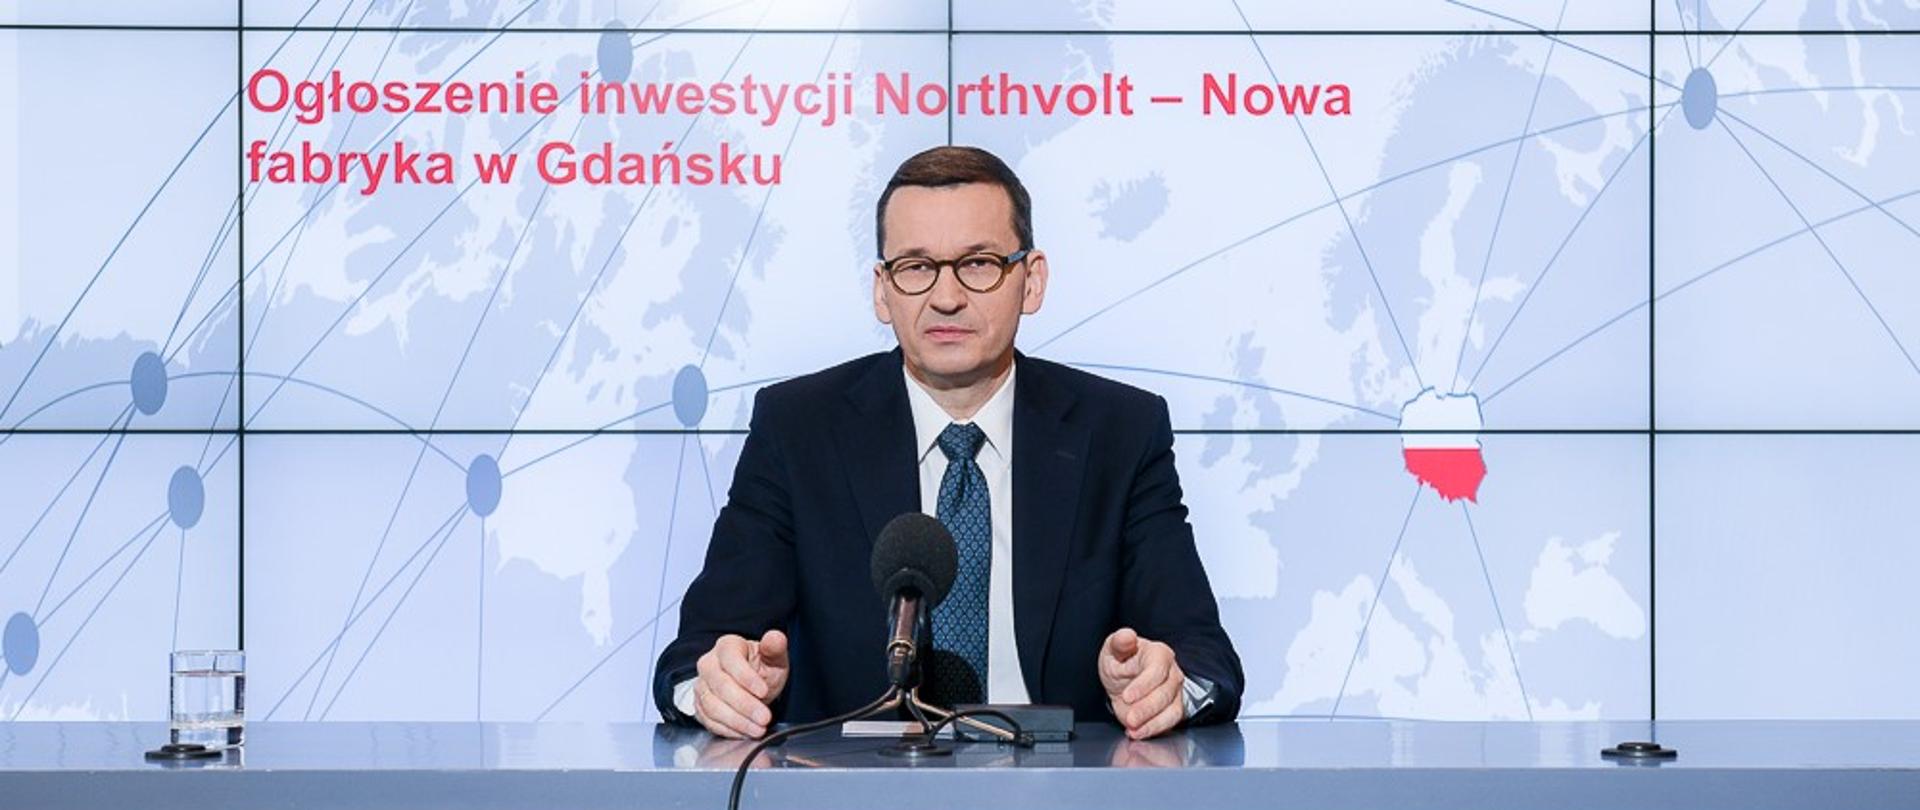 Premier Mateusz Morawiecki siedzi przy stole, na którym jest ustawiony mikrofon. Przed nim godło Polski. W tle ścianka multimedialna z napisem "Ogłoszenie inwestycji Northvolt - Nowa fabryka w Gdańsku".